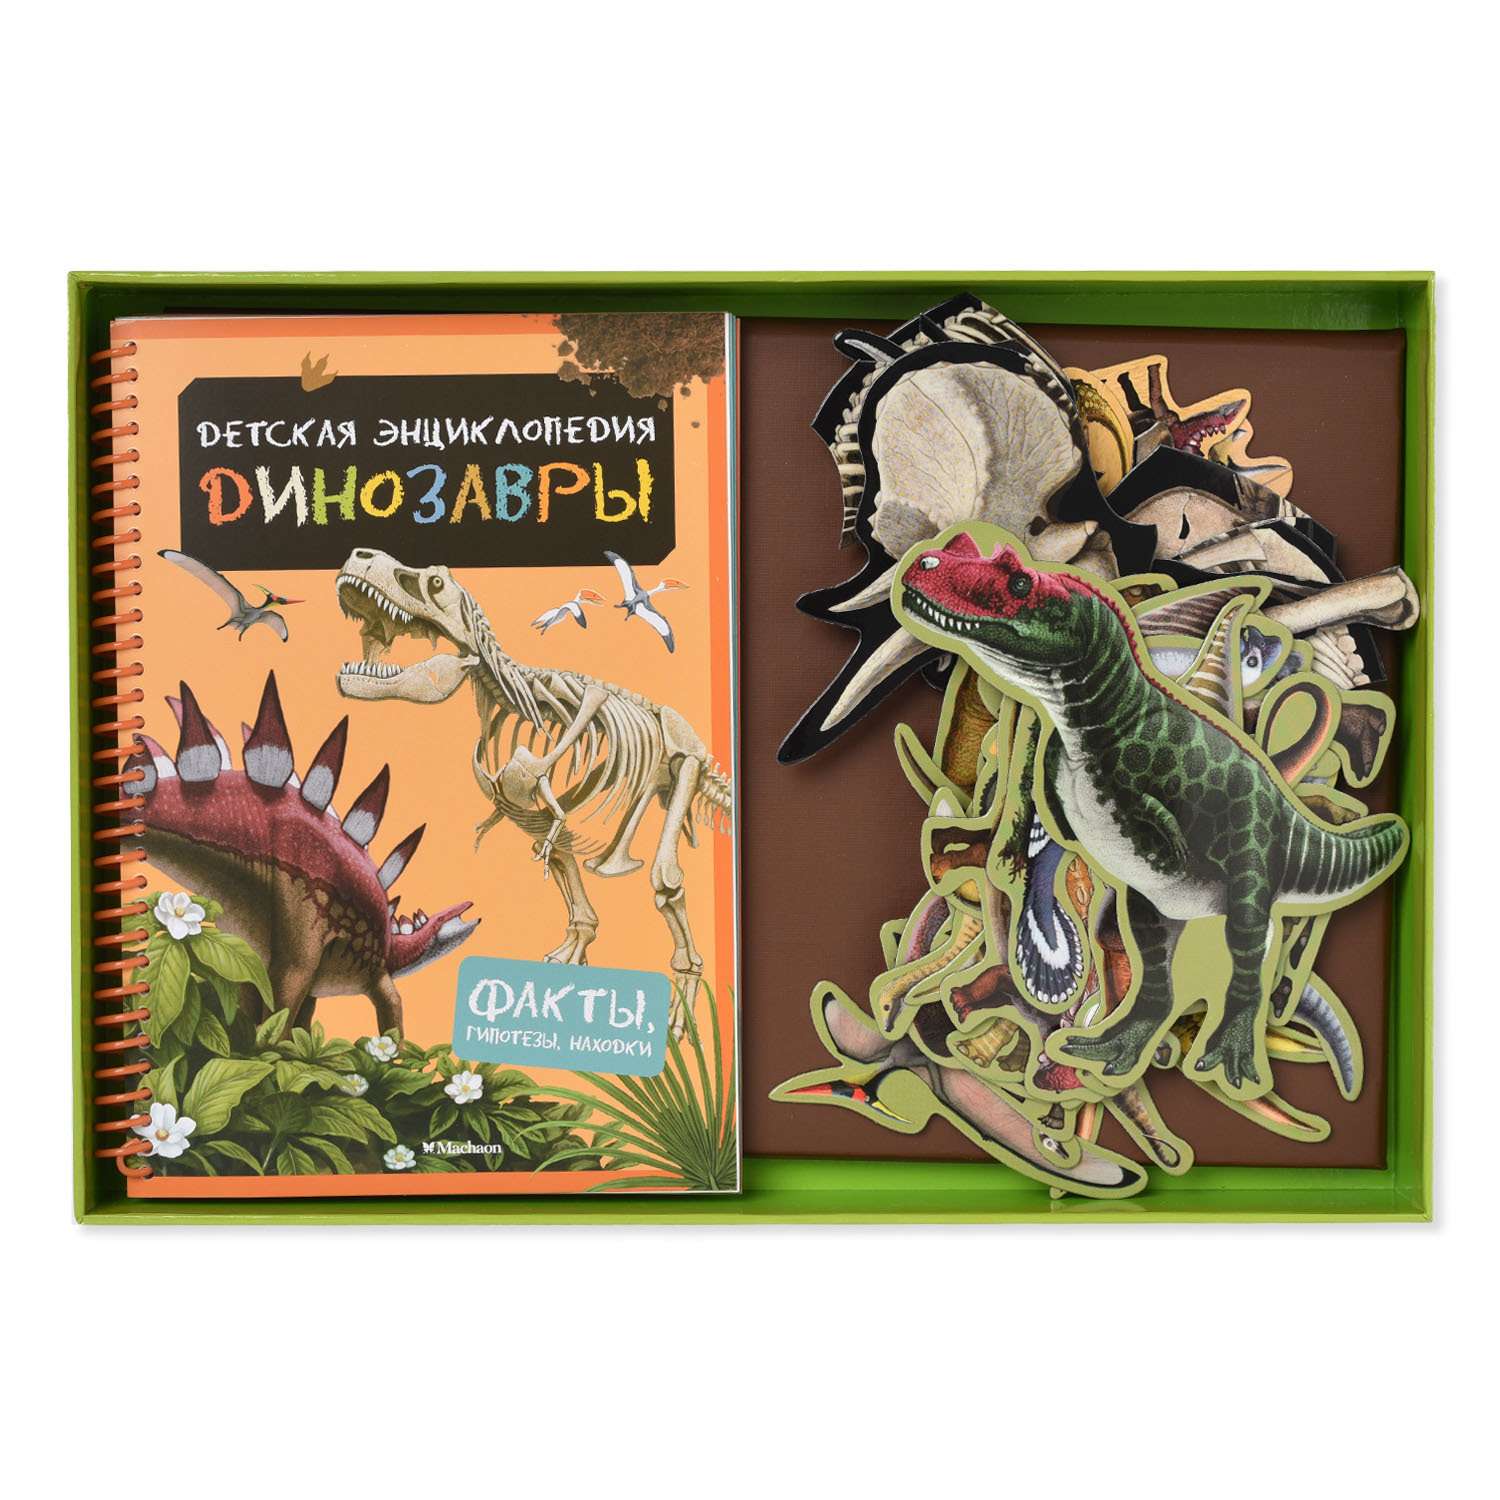 Детская энциклопедия Махаон Динозавры. С магнитами - фото 2